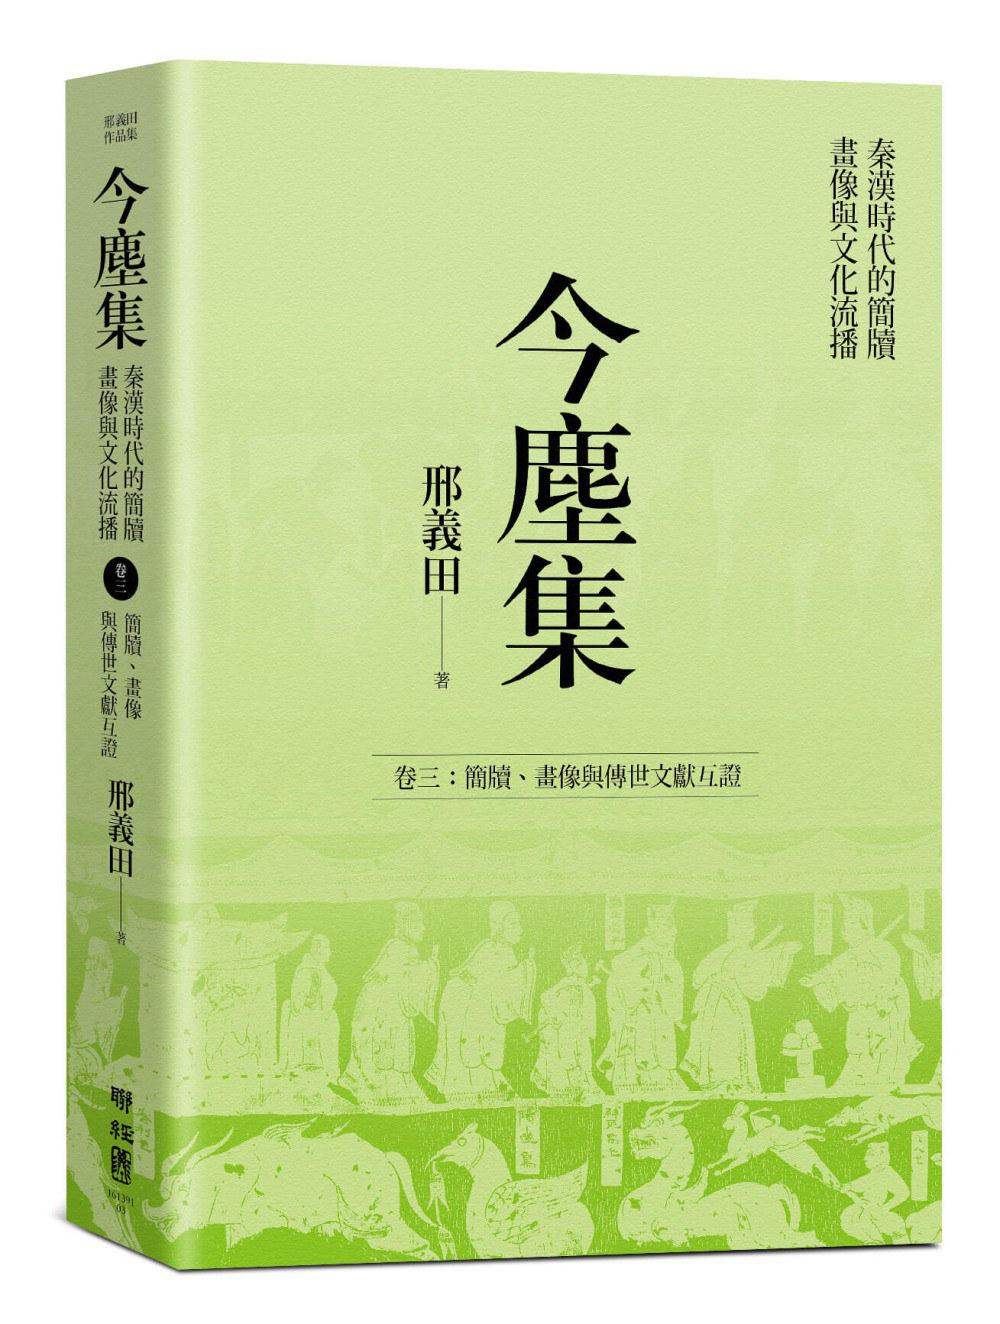 今尘集 秦汉时代的简牍、画像与文化流播 卷二 秦至晋代的简牍文书